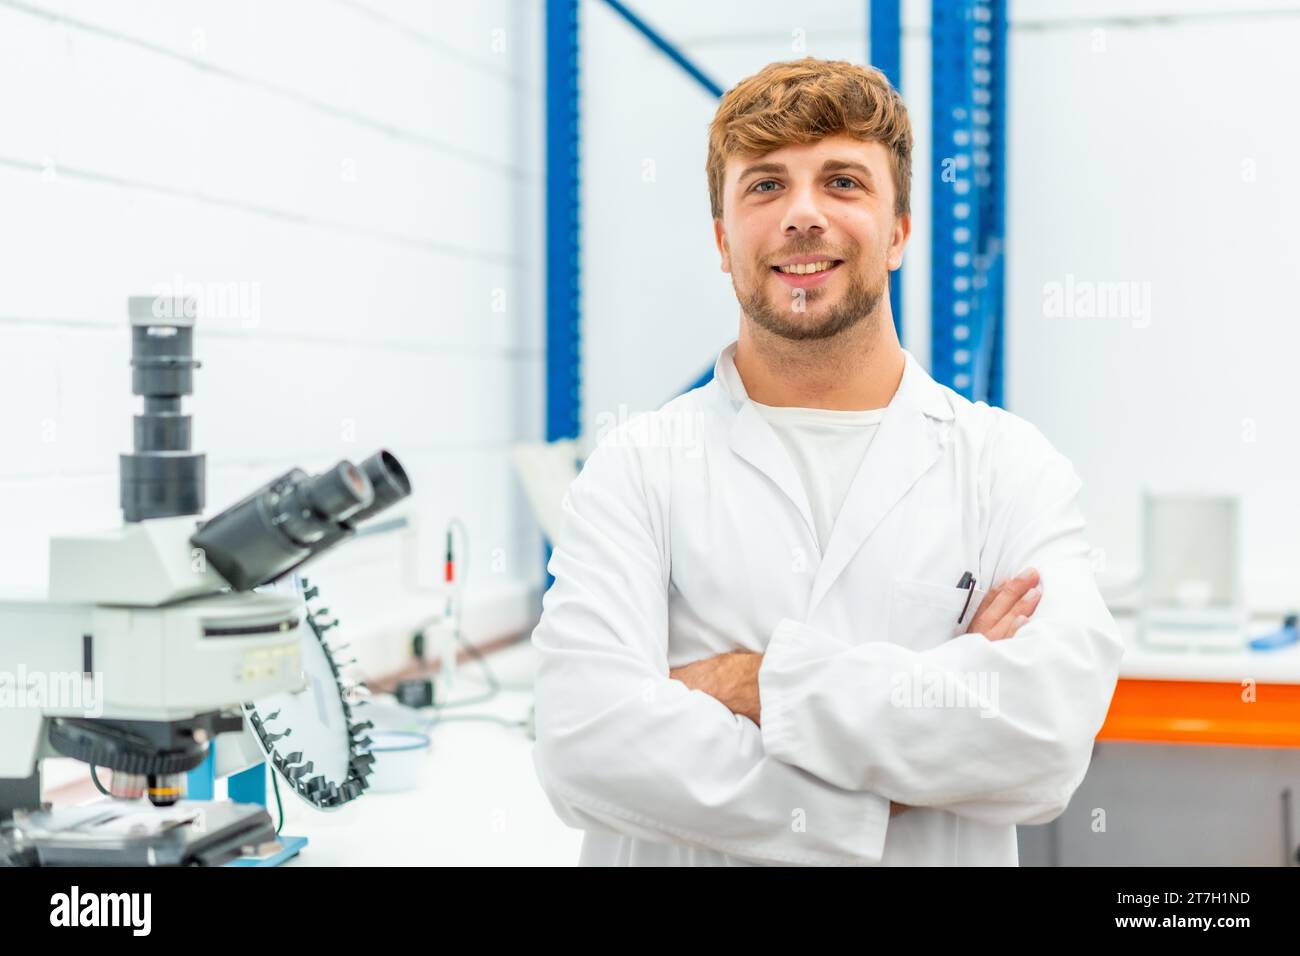 Porträt eines jungen Biologen, der mit überkreuzten Armen in einem Labor steht Stockfoto